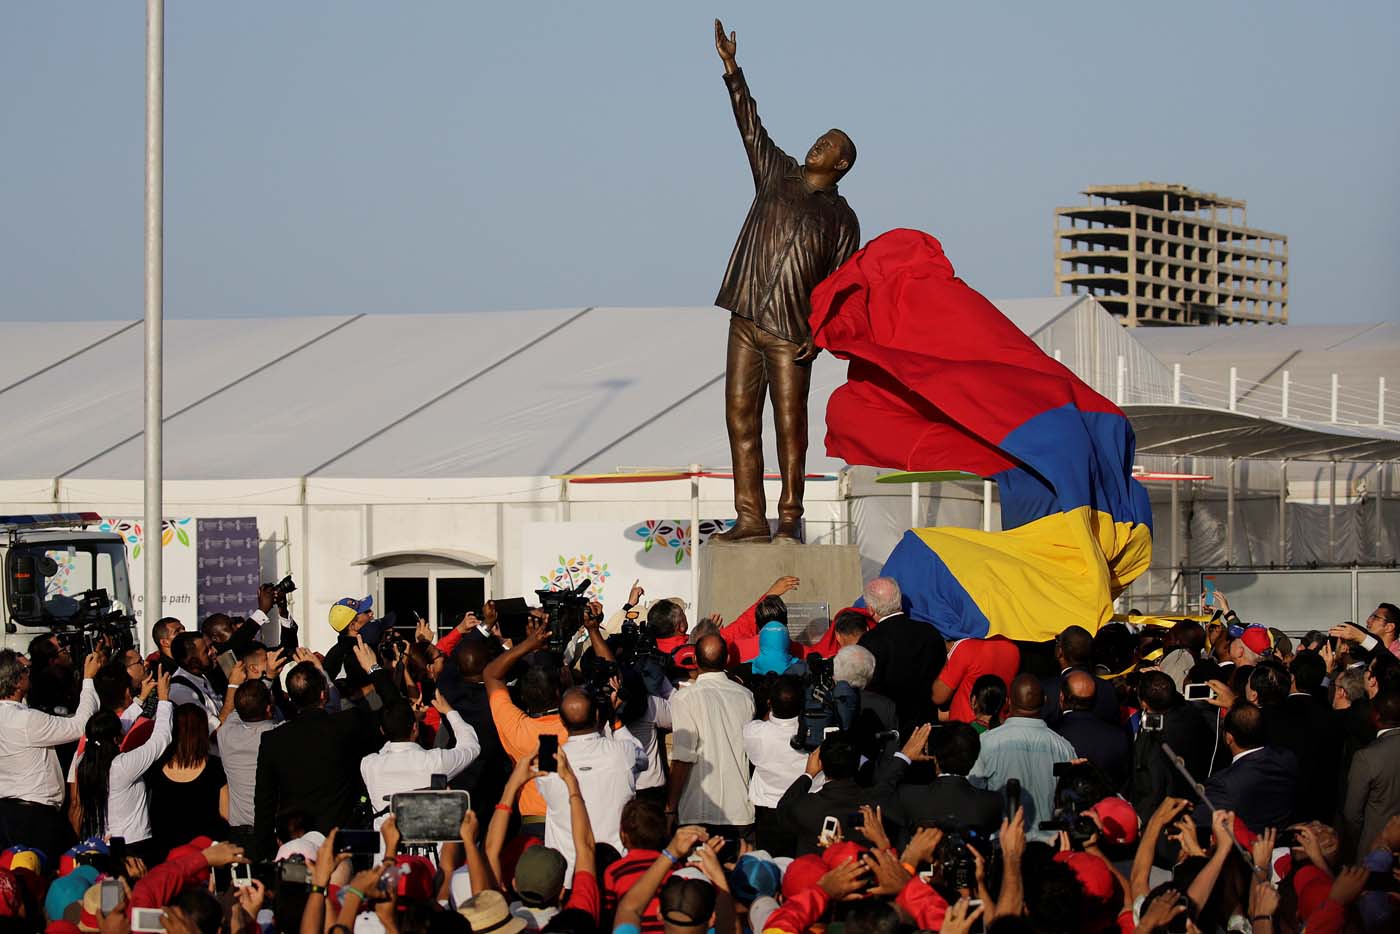 Mientras el pueblo CLAMA COMIDA, Nicolás inaugura “monumentos” de Chávez (Fotos)